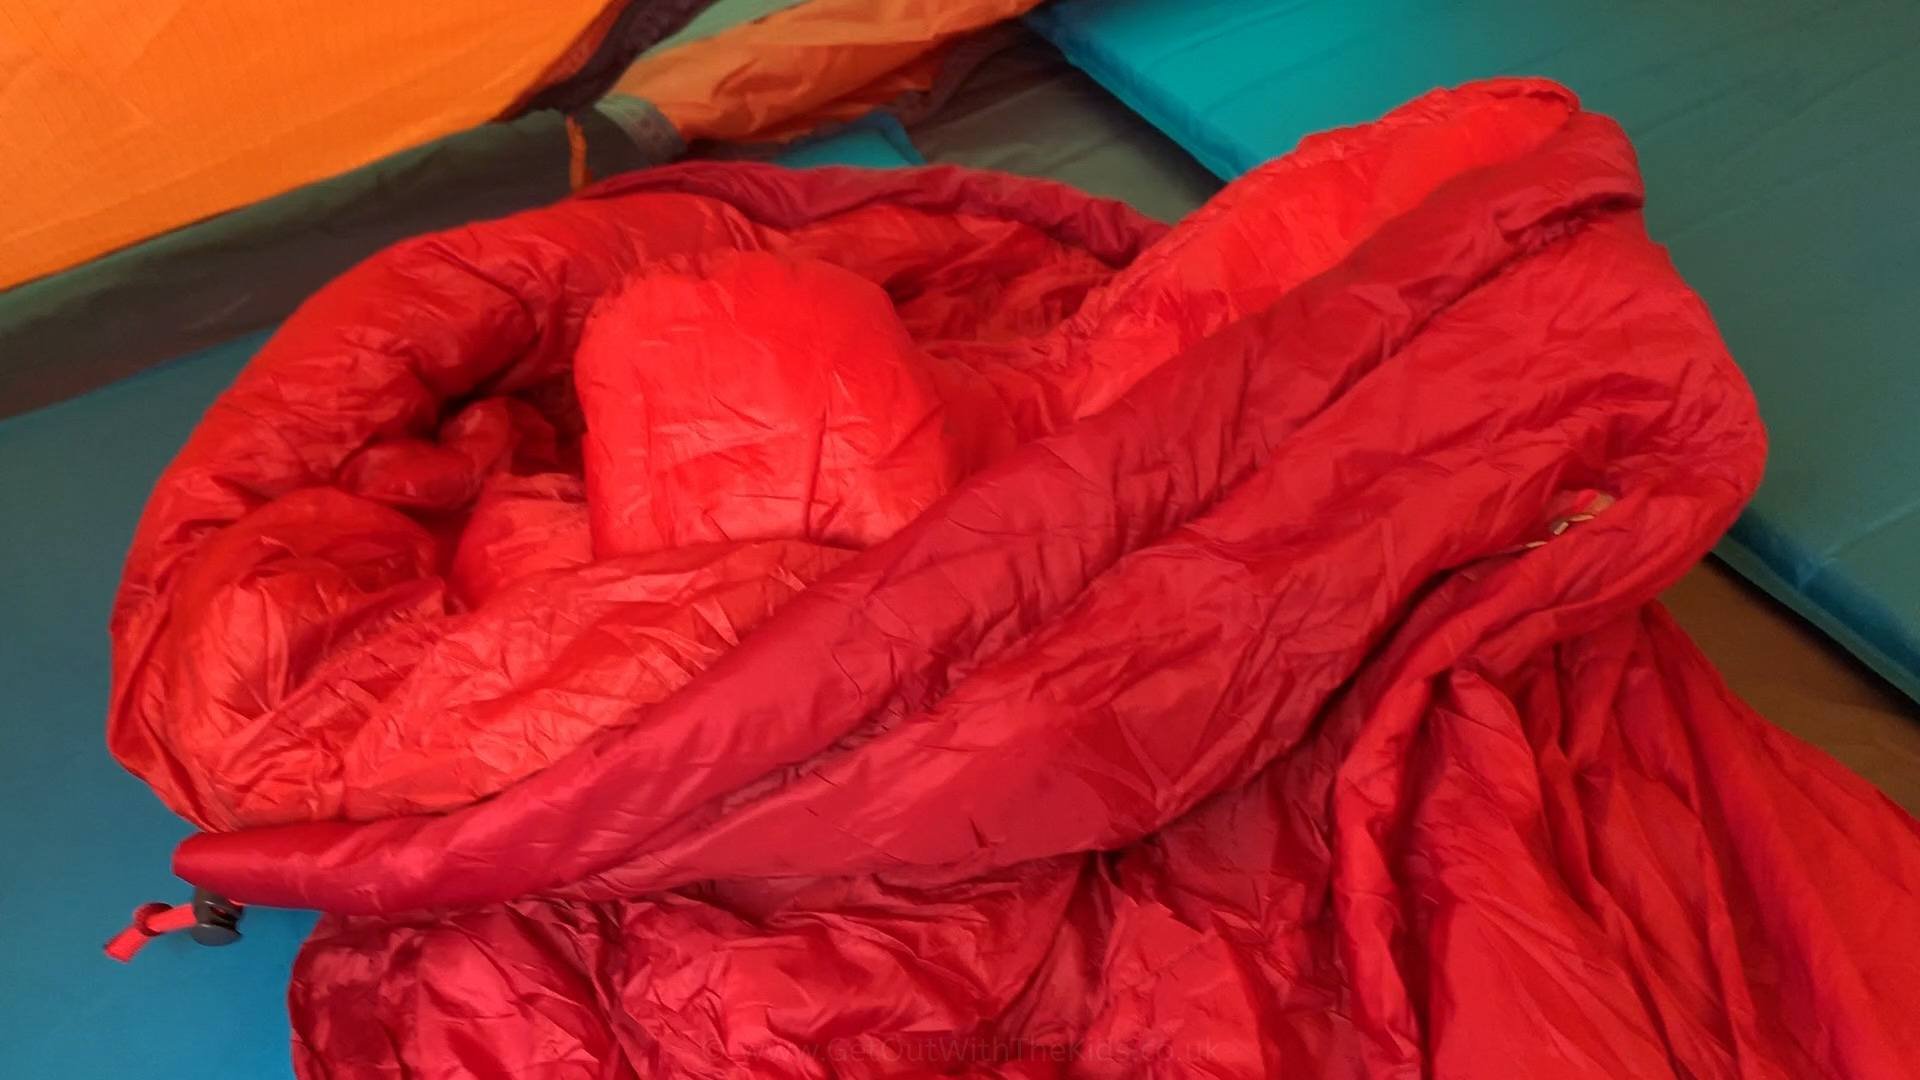 Sleeping bag hood